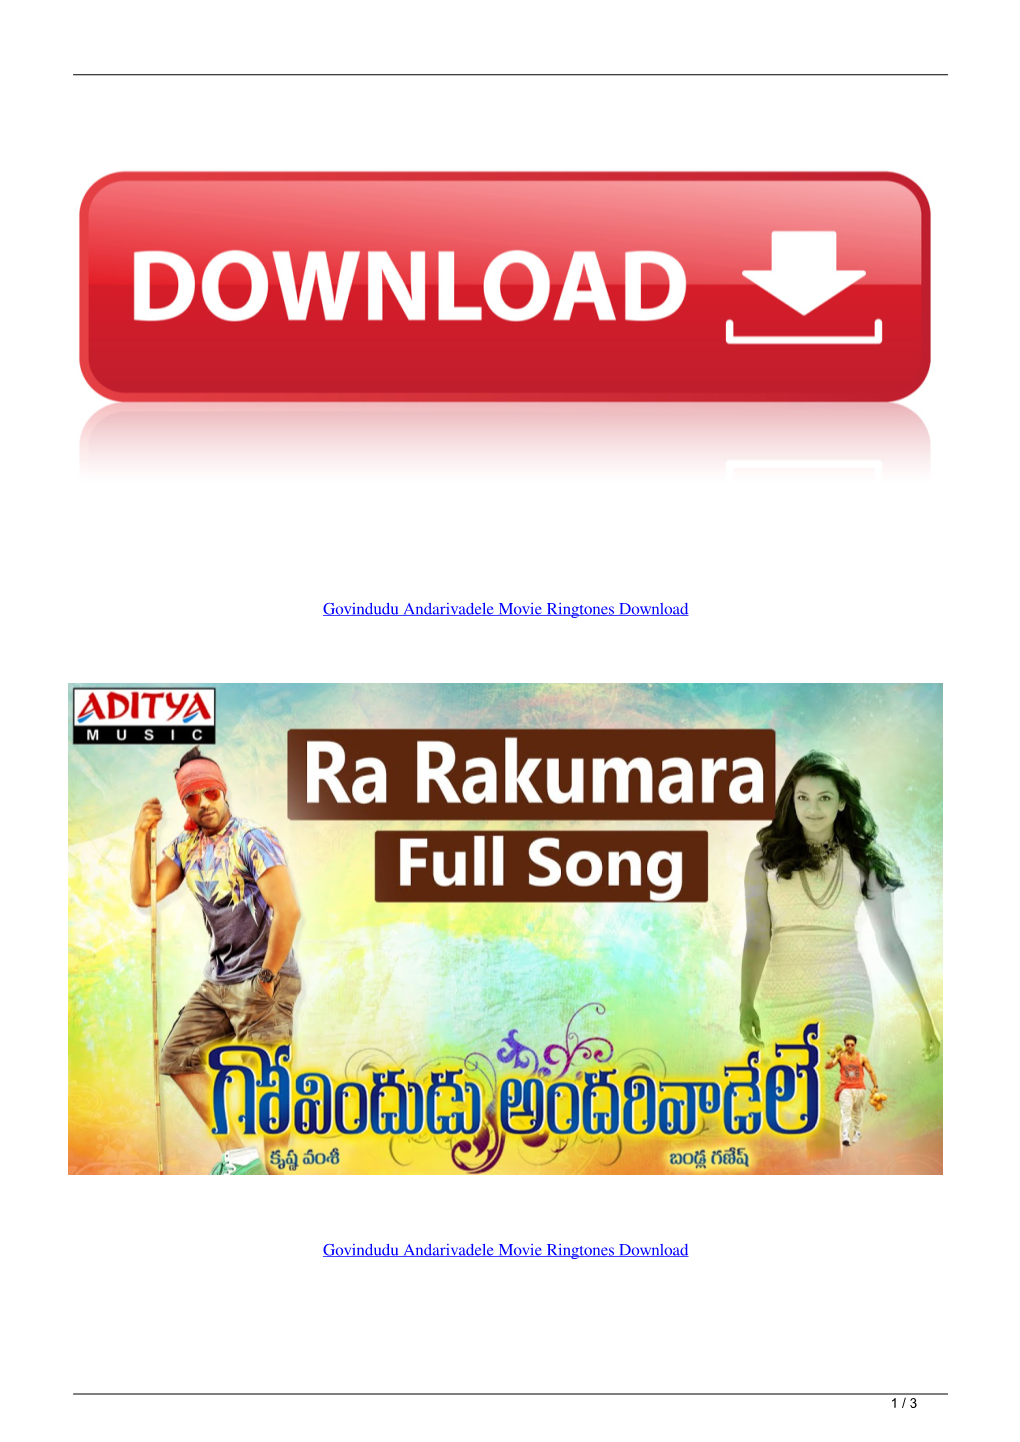 Govindudu Andarivadele Movie Ringtones Download